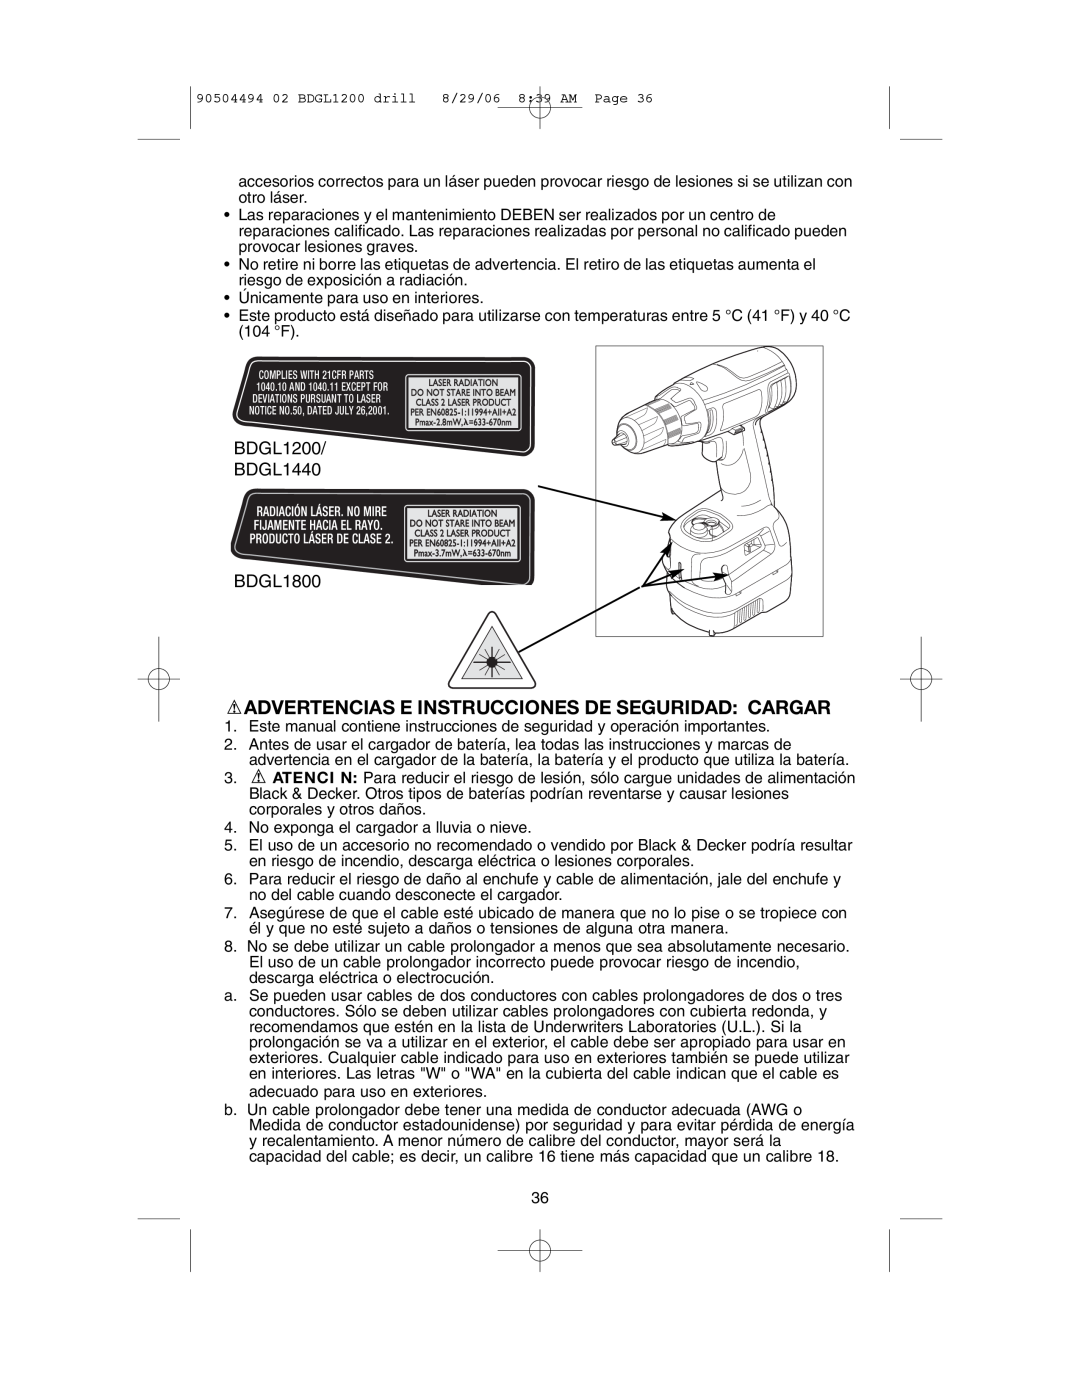 Black & Decker BDGL1800, 90504494 instruction manual Advertencias E Instrucciones De Seguridad Cargar, BDGL1200 BDGL1440 